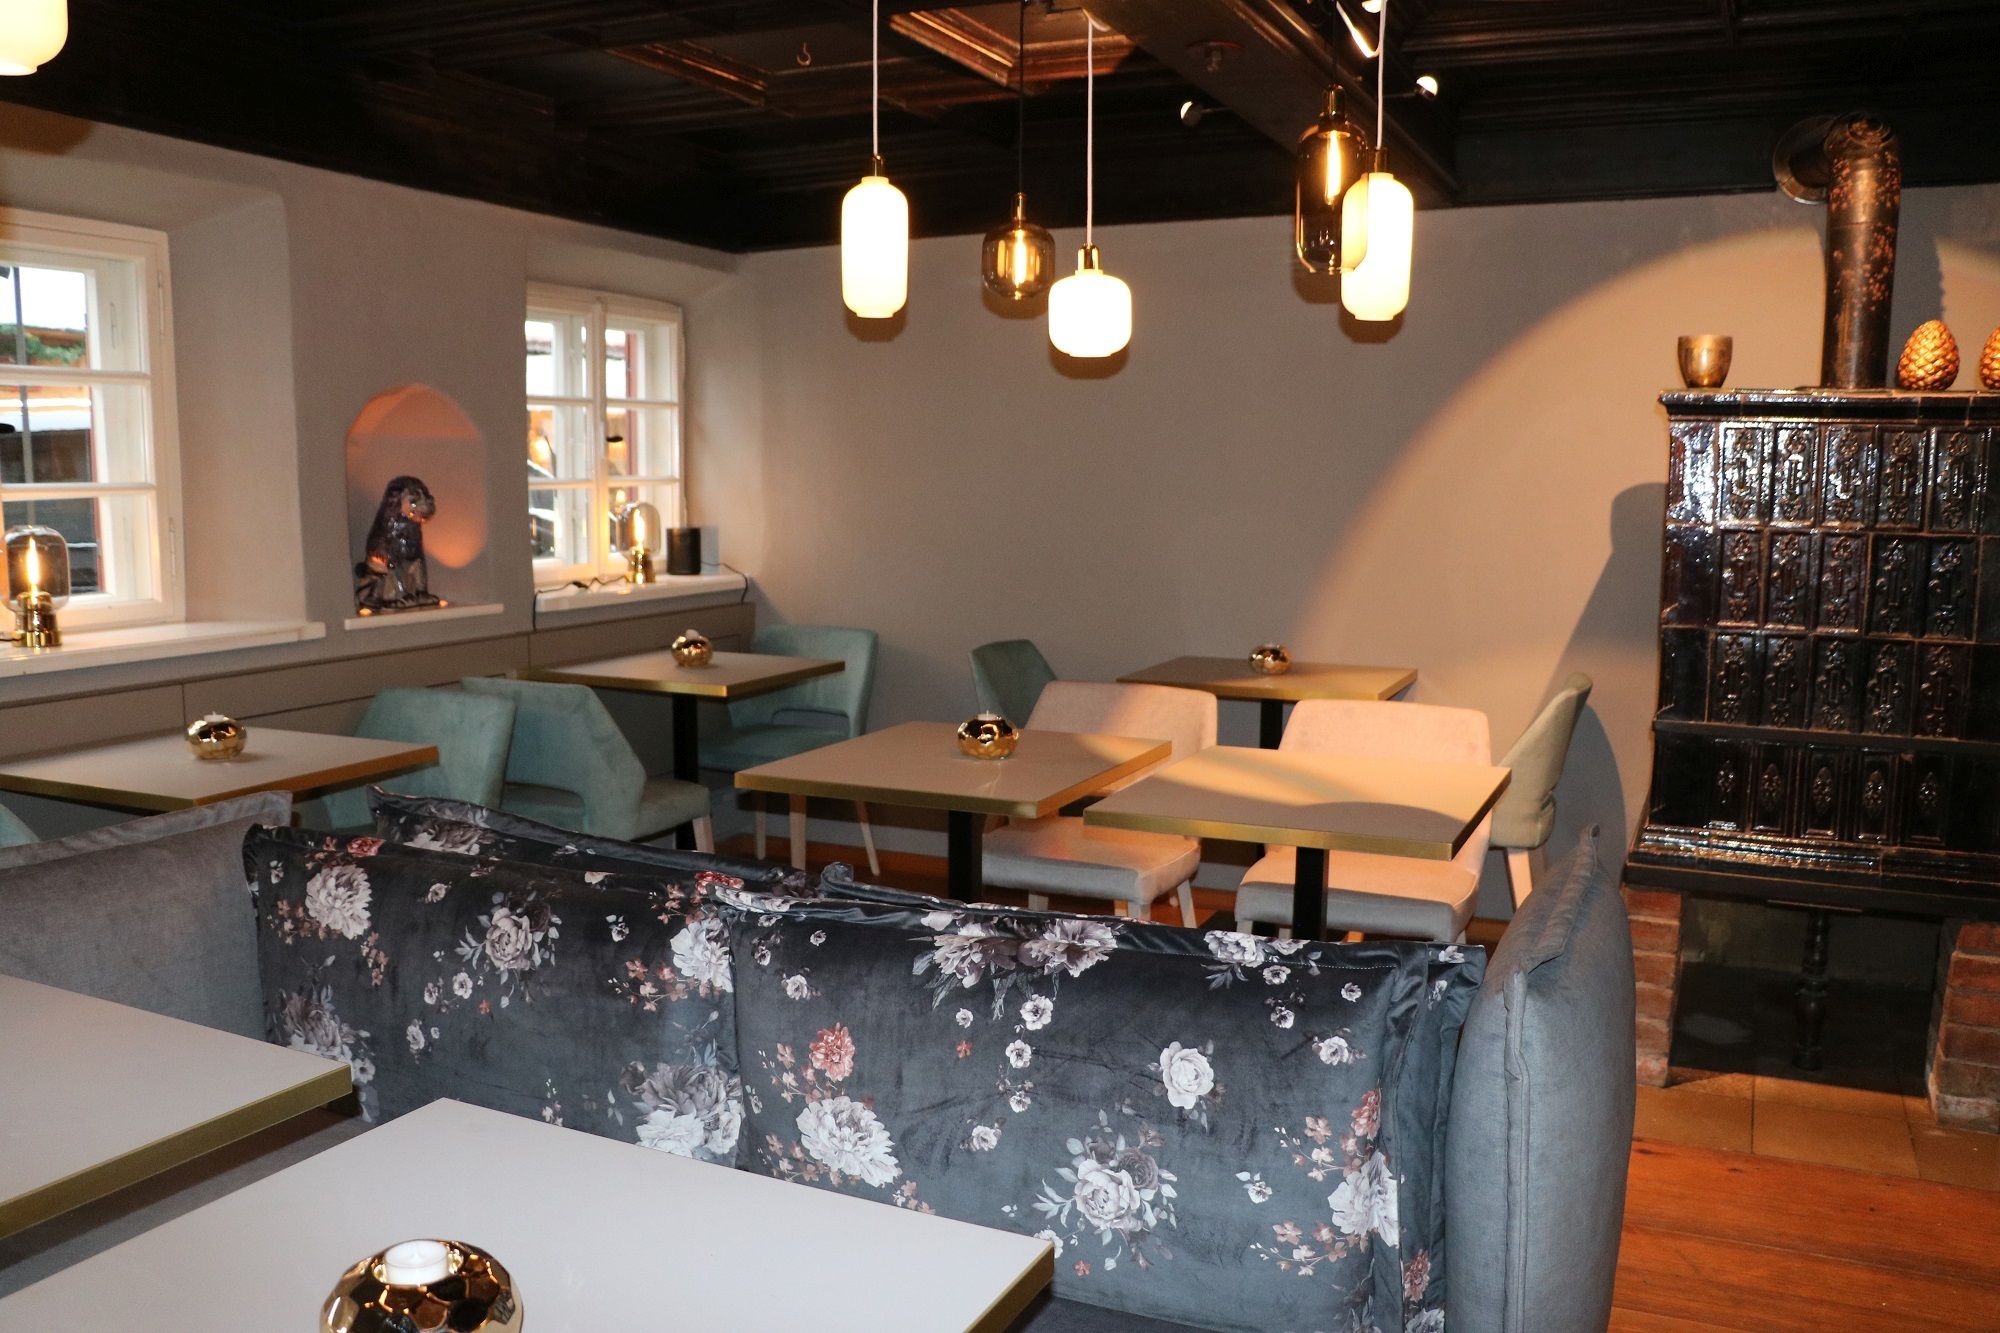 Blick in die Cafè-Bar "Scherzl" in Prien am Chiemsee